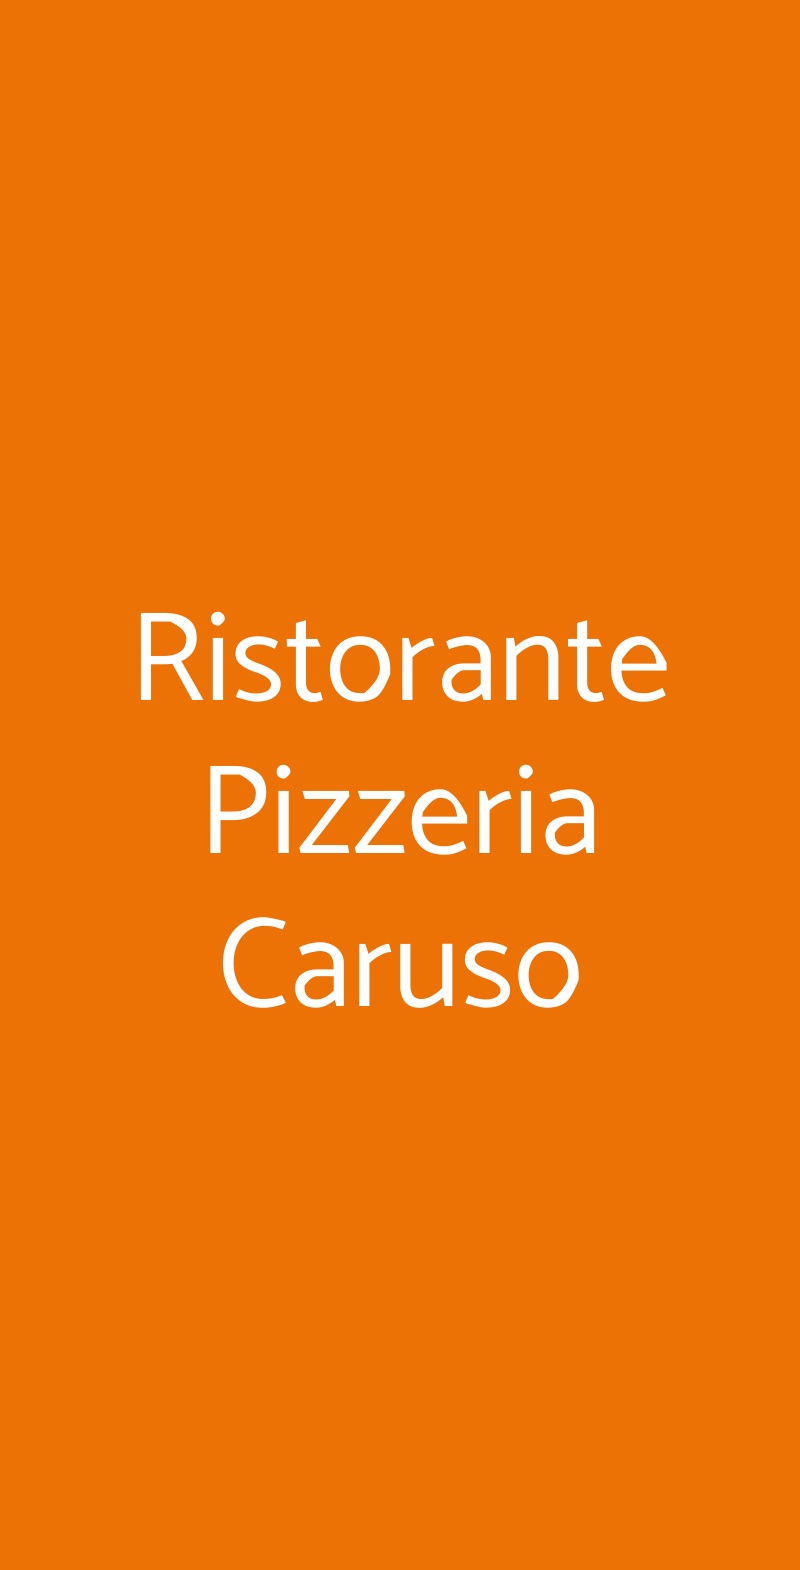 Ristorante Pizzeria Caruso Bologna menù 1 pagina